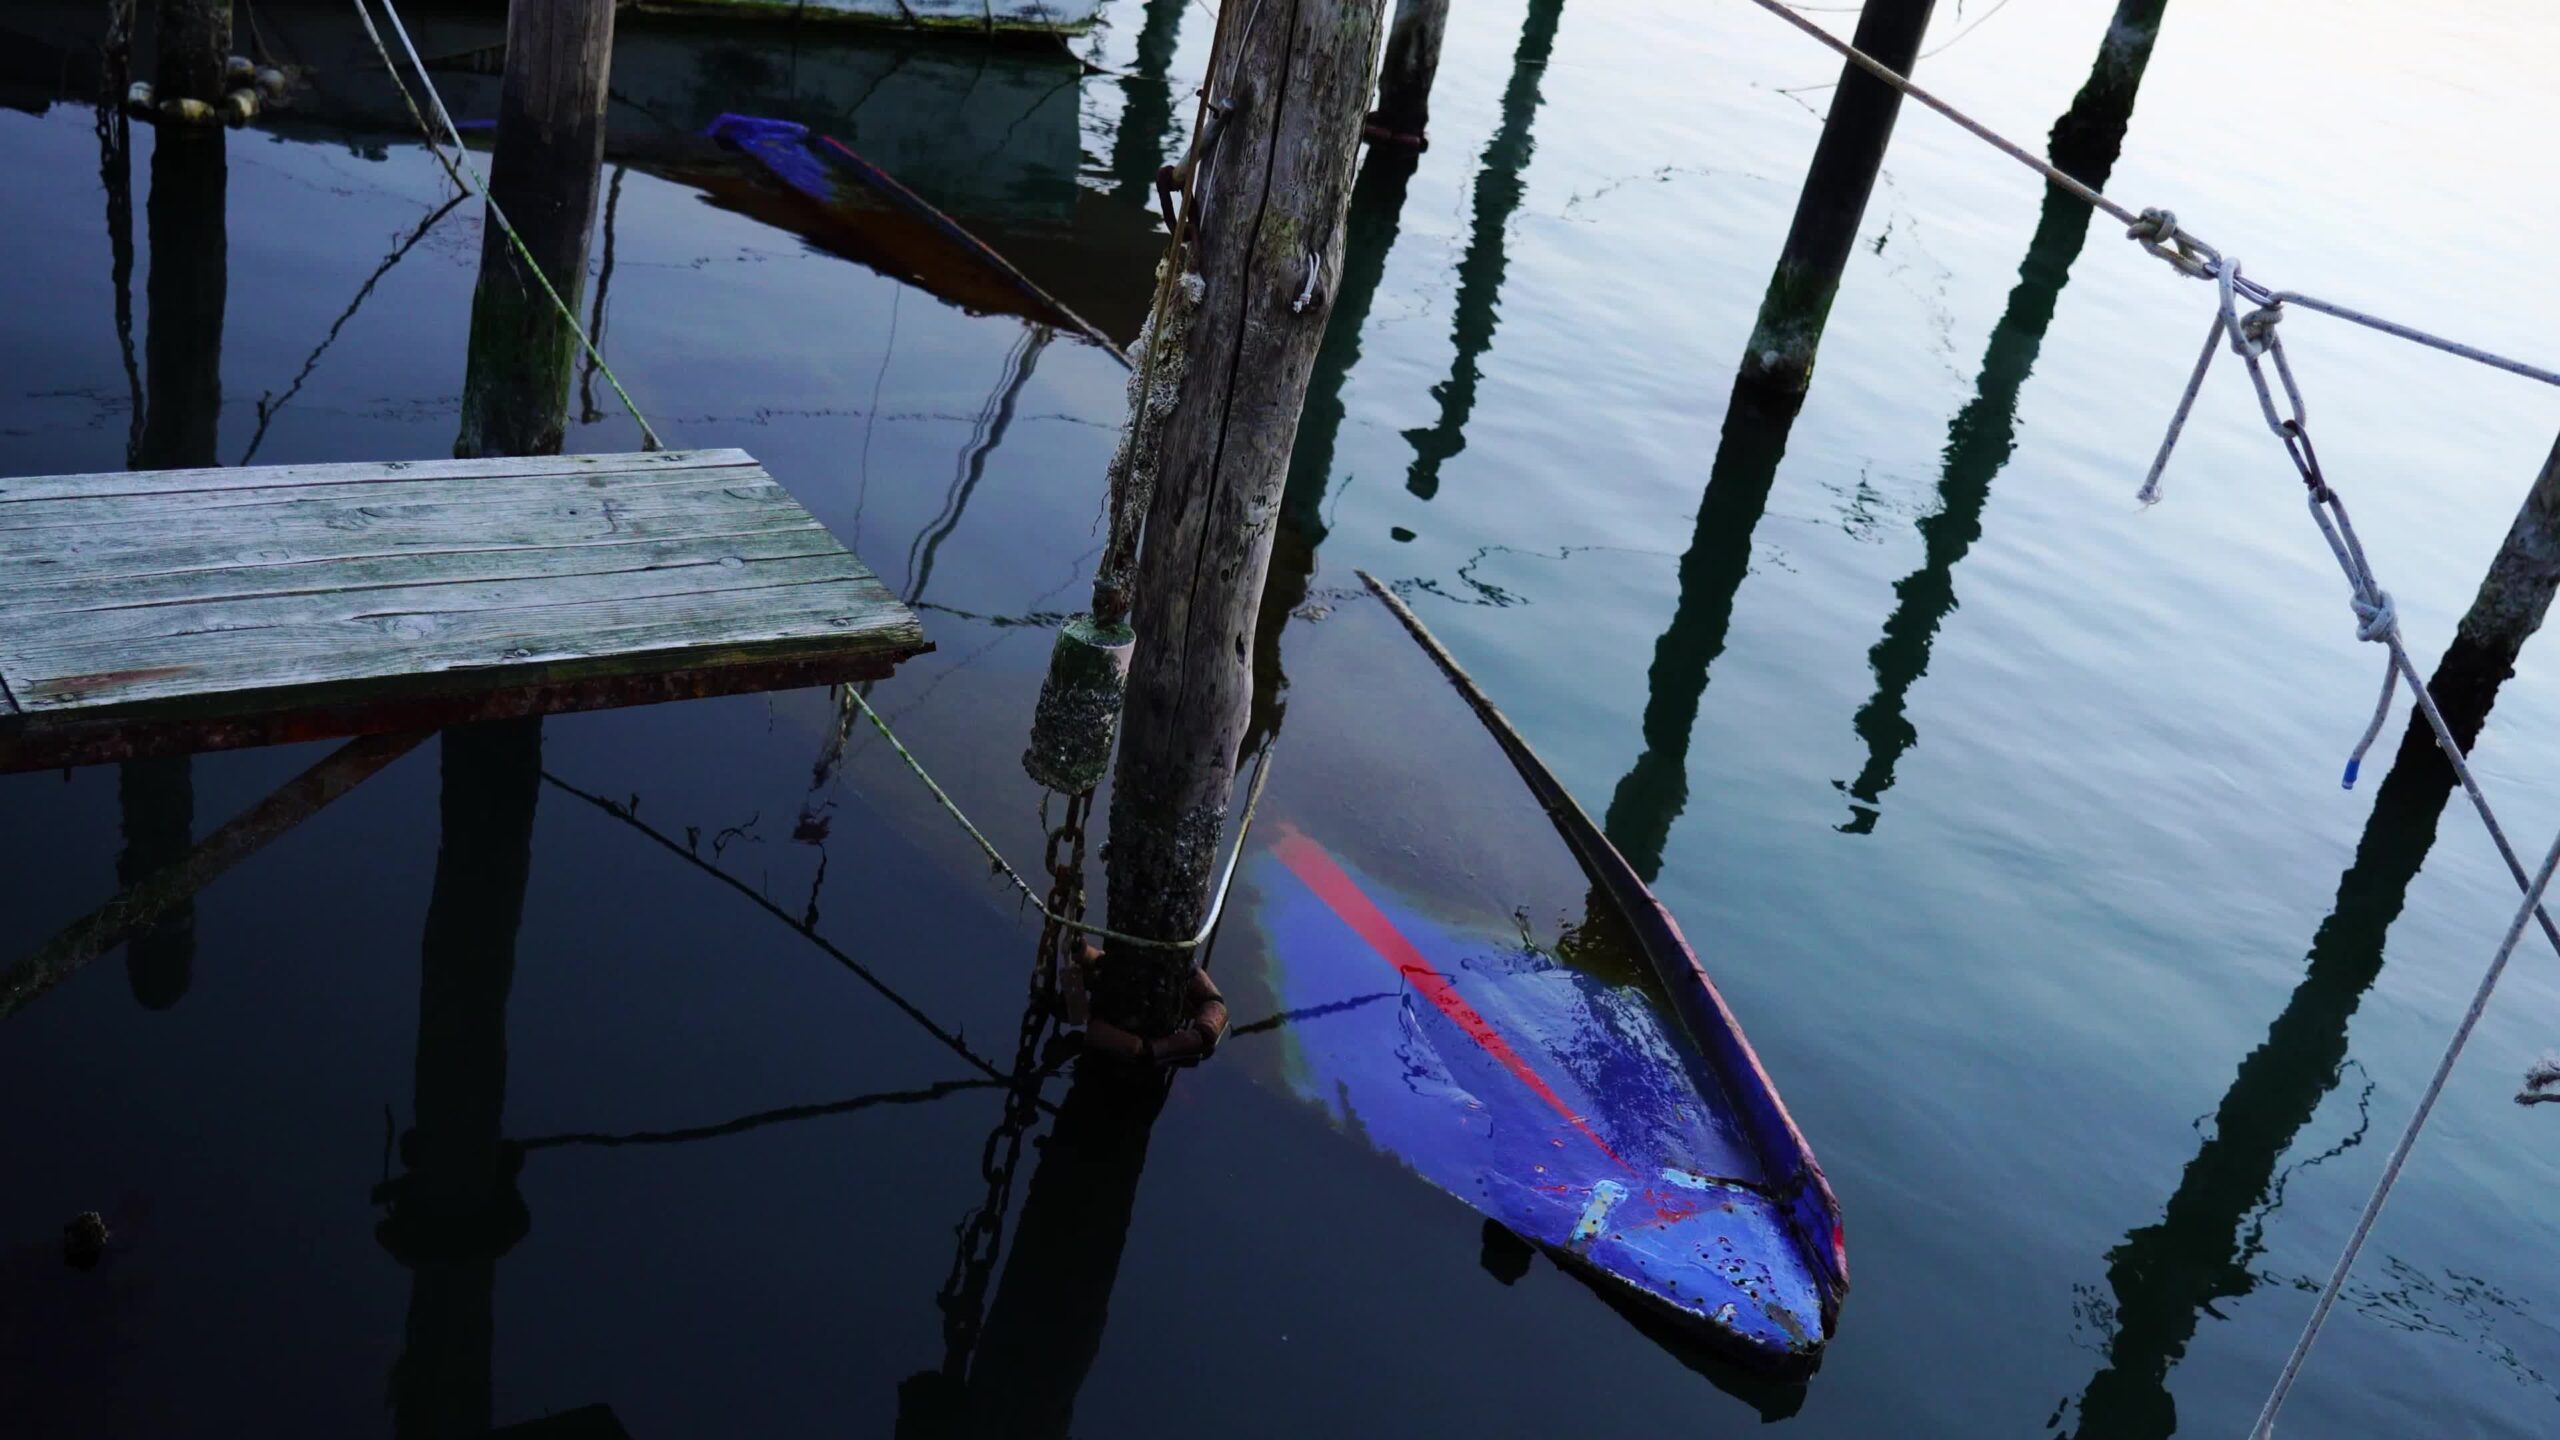 Grande carcassa di barca affondata vicino a motoscafi in legno ormeggiati